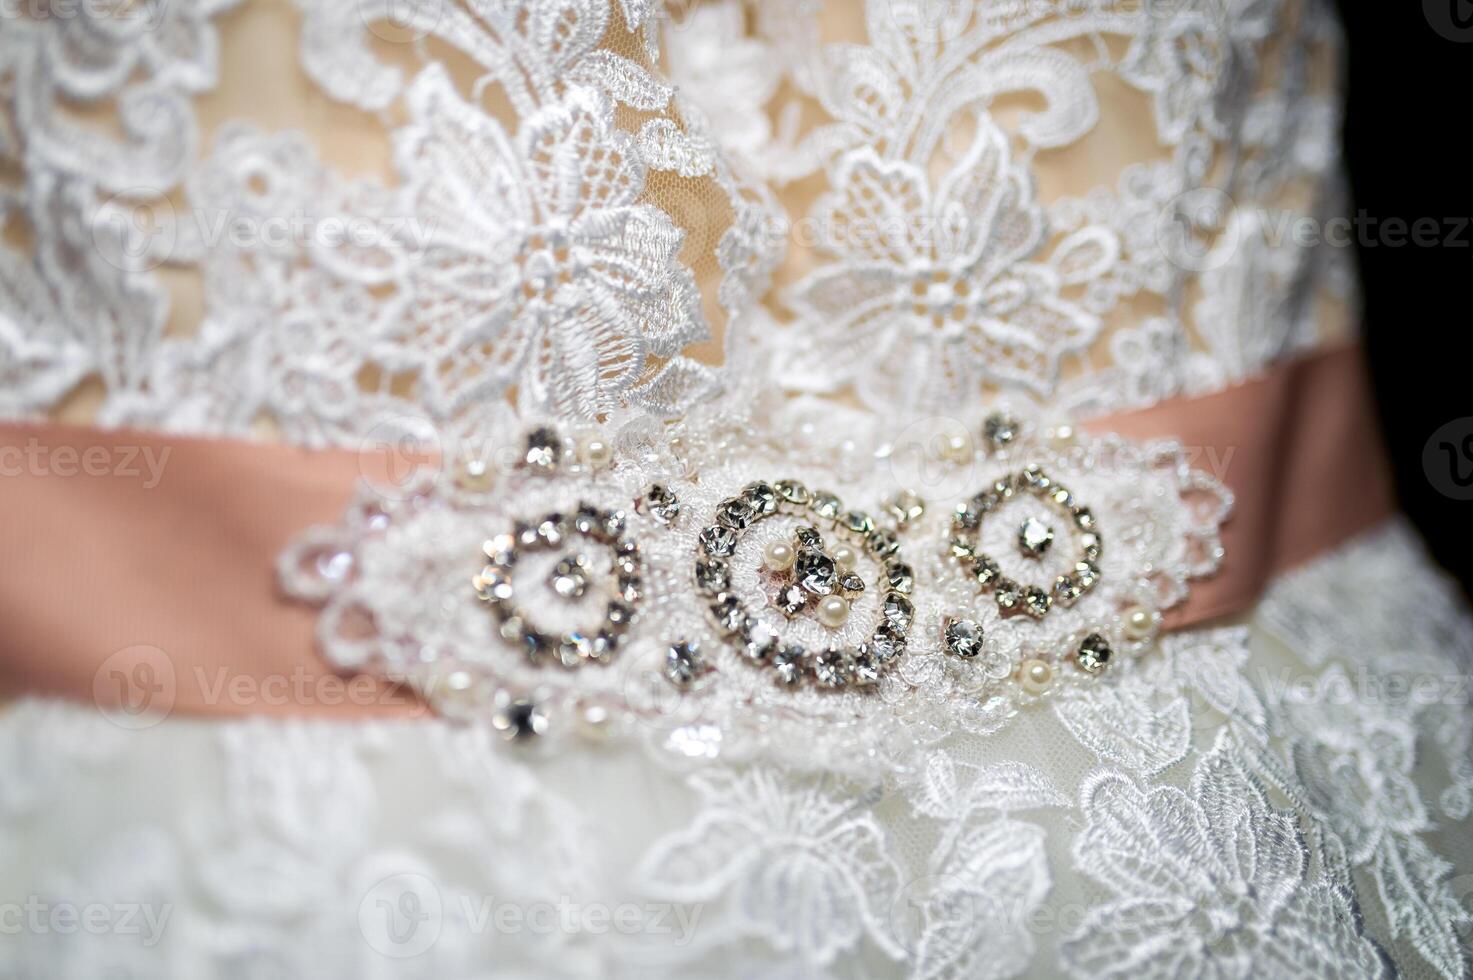 fragmento do uma Casamento vestir com uma cinto decorado com precioso pedras e pérolas. da noiva vestir. Casamento conceito foto